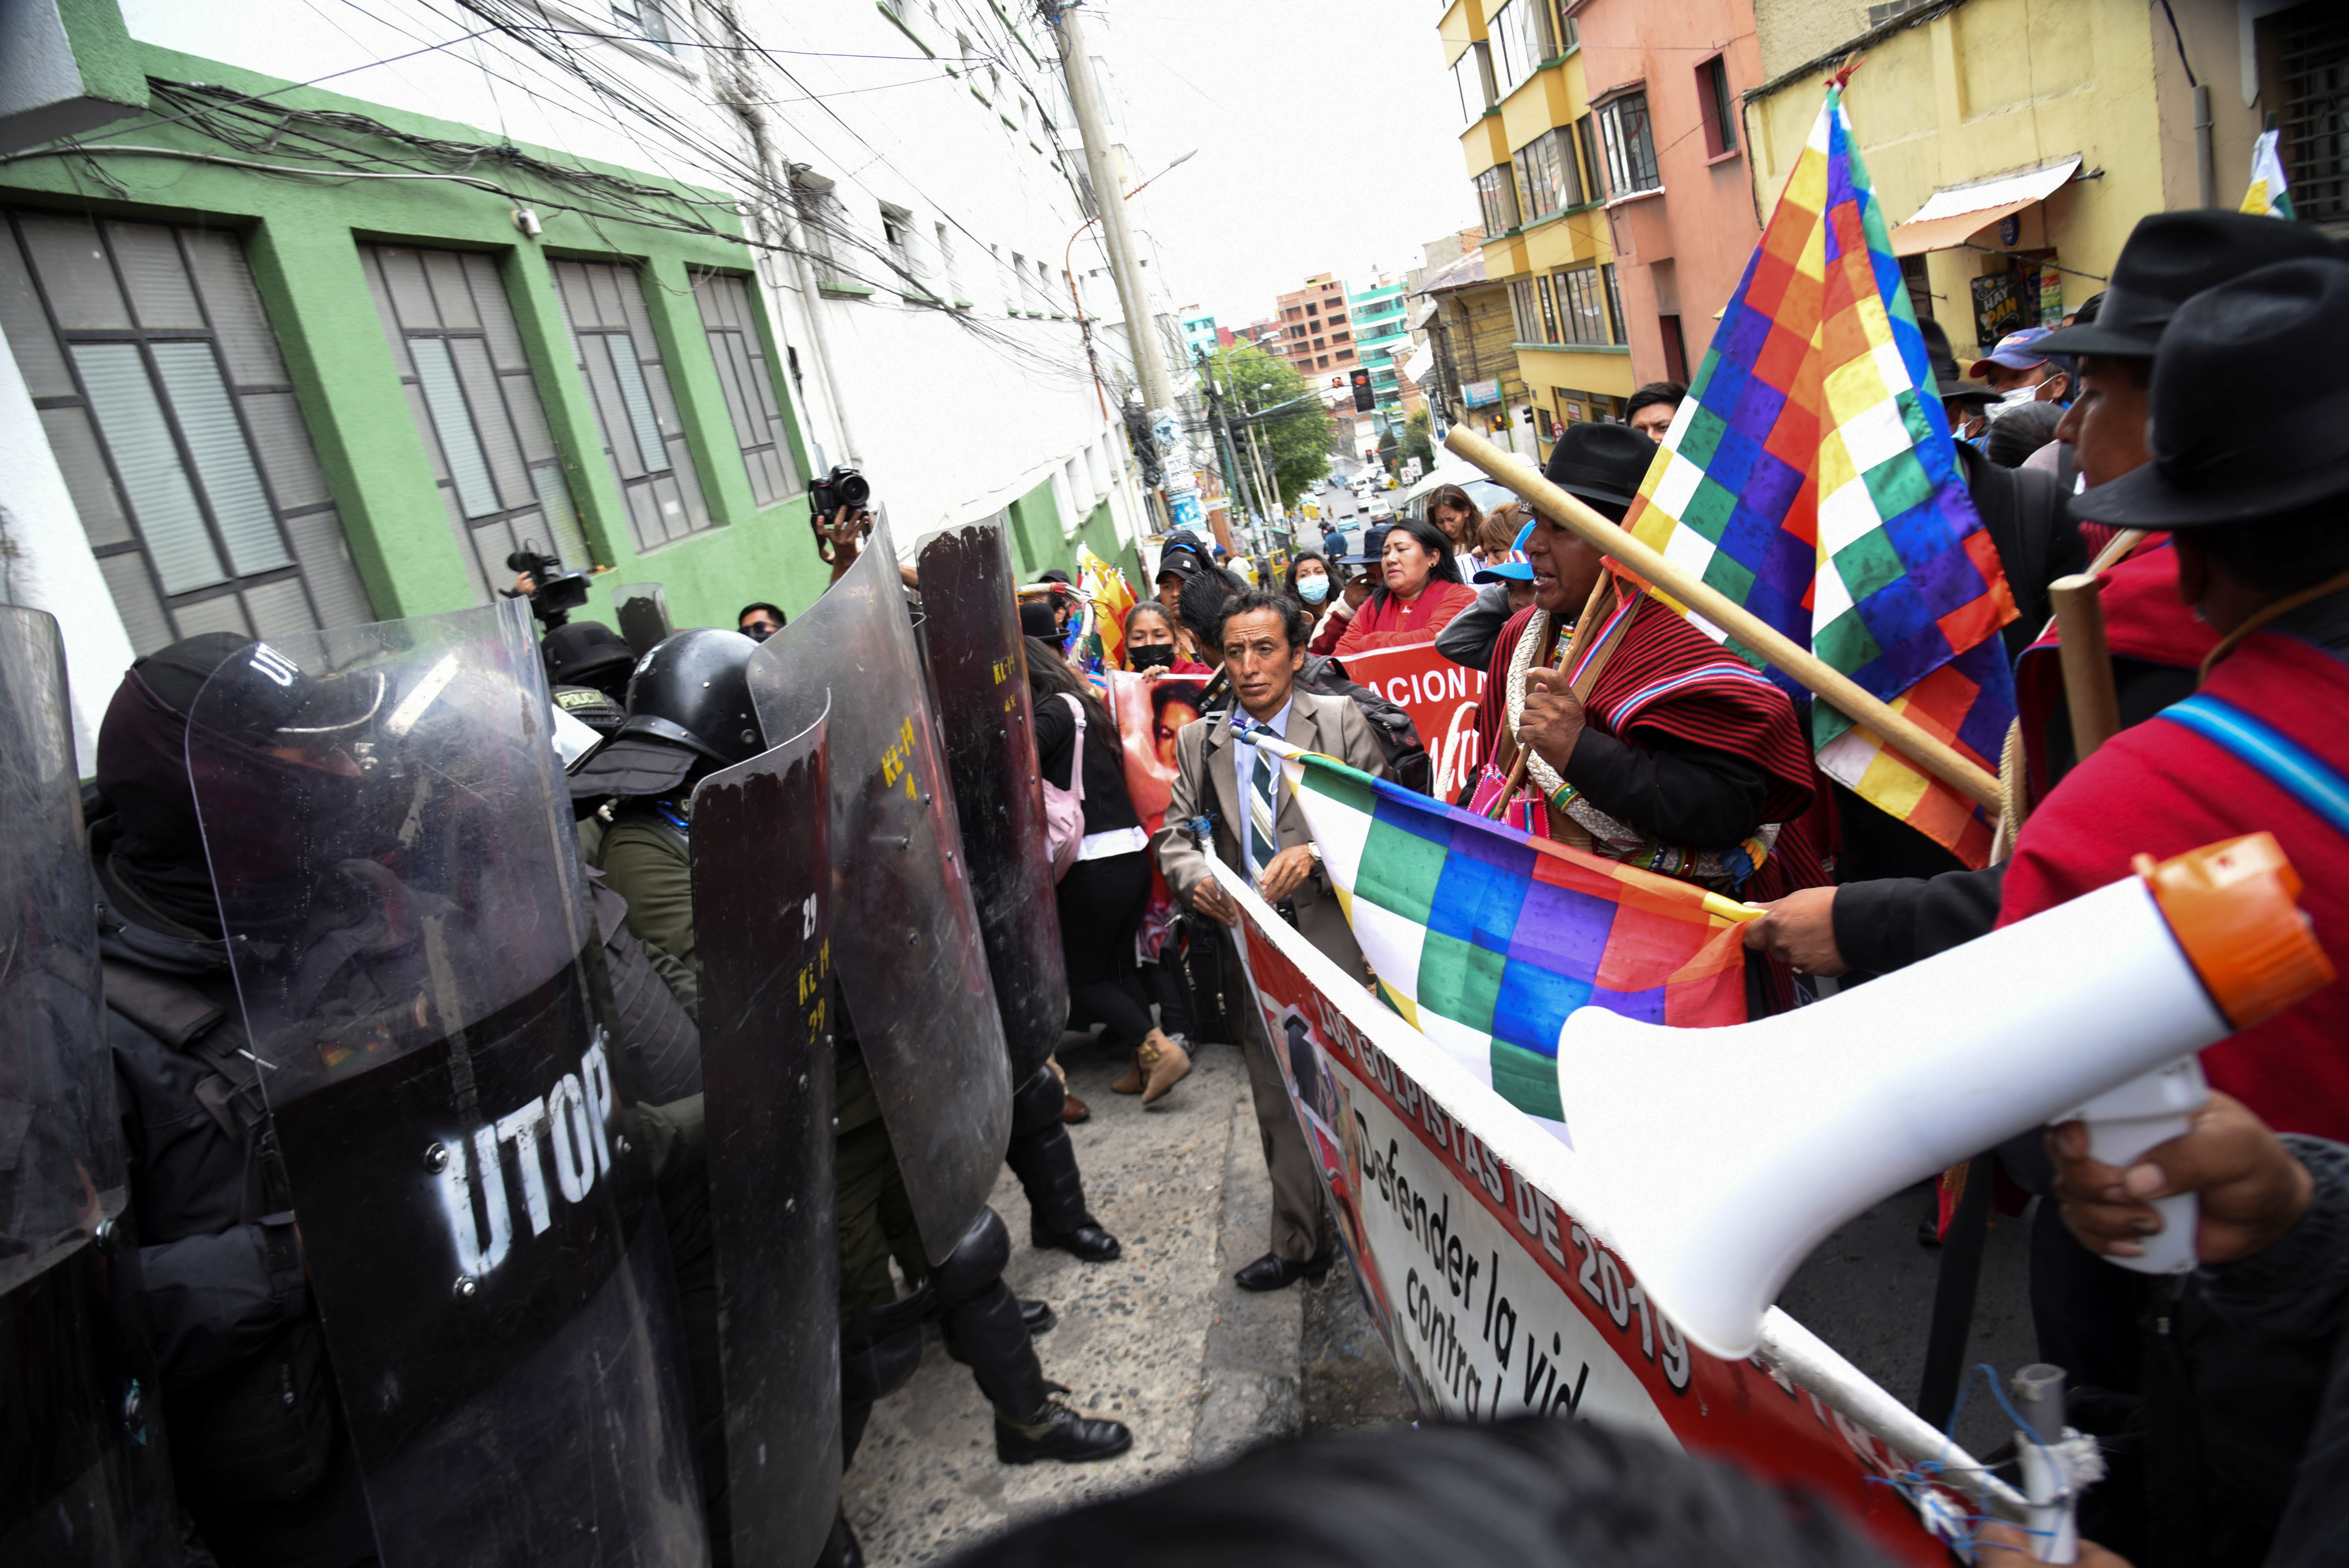 La gente asiste a una protesta para exigir el encarcelamiento del gobernador opositor de Santa Cruz, Luis Fernando Camacho, quien fue arrestado por la policía de Bolivia el miércoles, frente a la oficina del fiscal estatal en La Paz, Bolivia, el 29 de diciembre de 2022. REUTERS/Claudia Morales